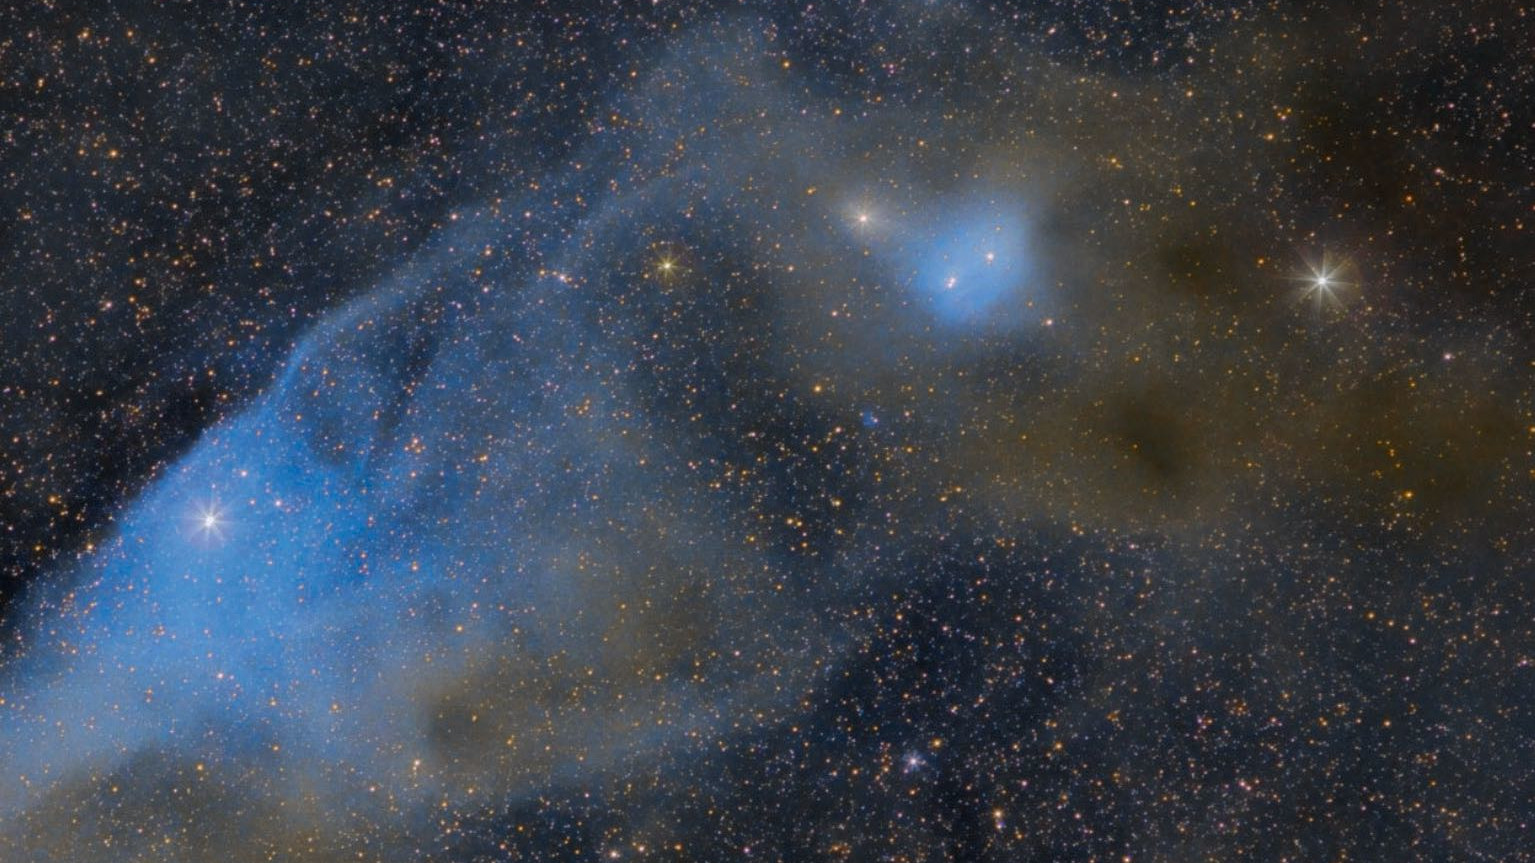 Der "Blue Horsehead Nebula" IC 4592 im Skorpion (Norden
liegt unten). ν Scorpii befindet sich am Nasenrücken des Kopfes und sorgt für die bläuliche Färbung. Unterhalb der "Ohren" ist der ebenfalls bläuliche Nebel IC 4601 zu erkennen. Scott Rosen